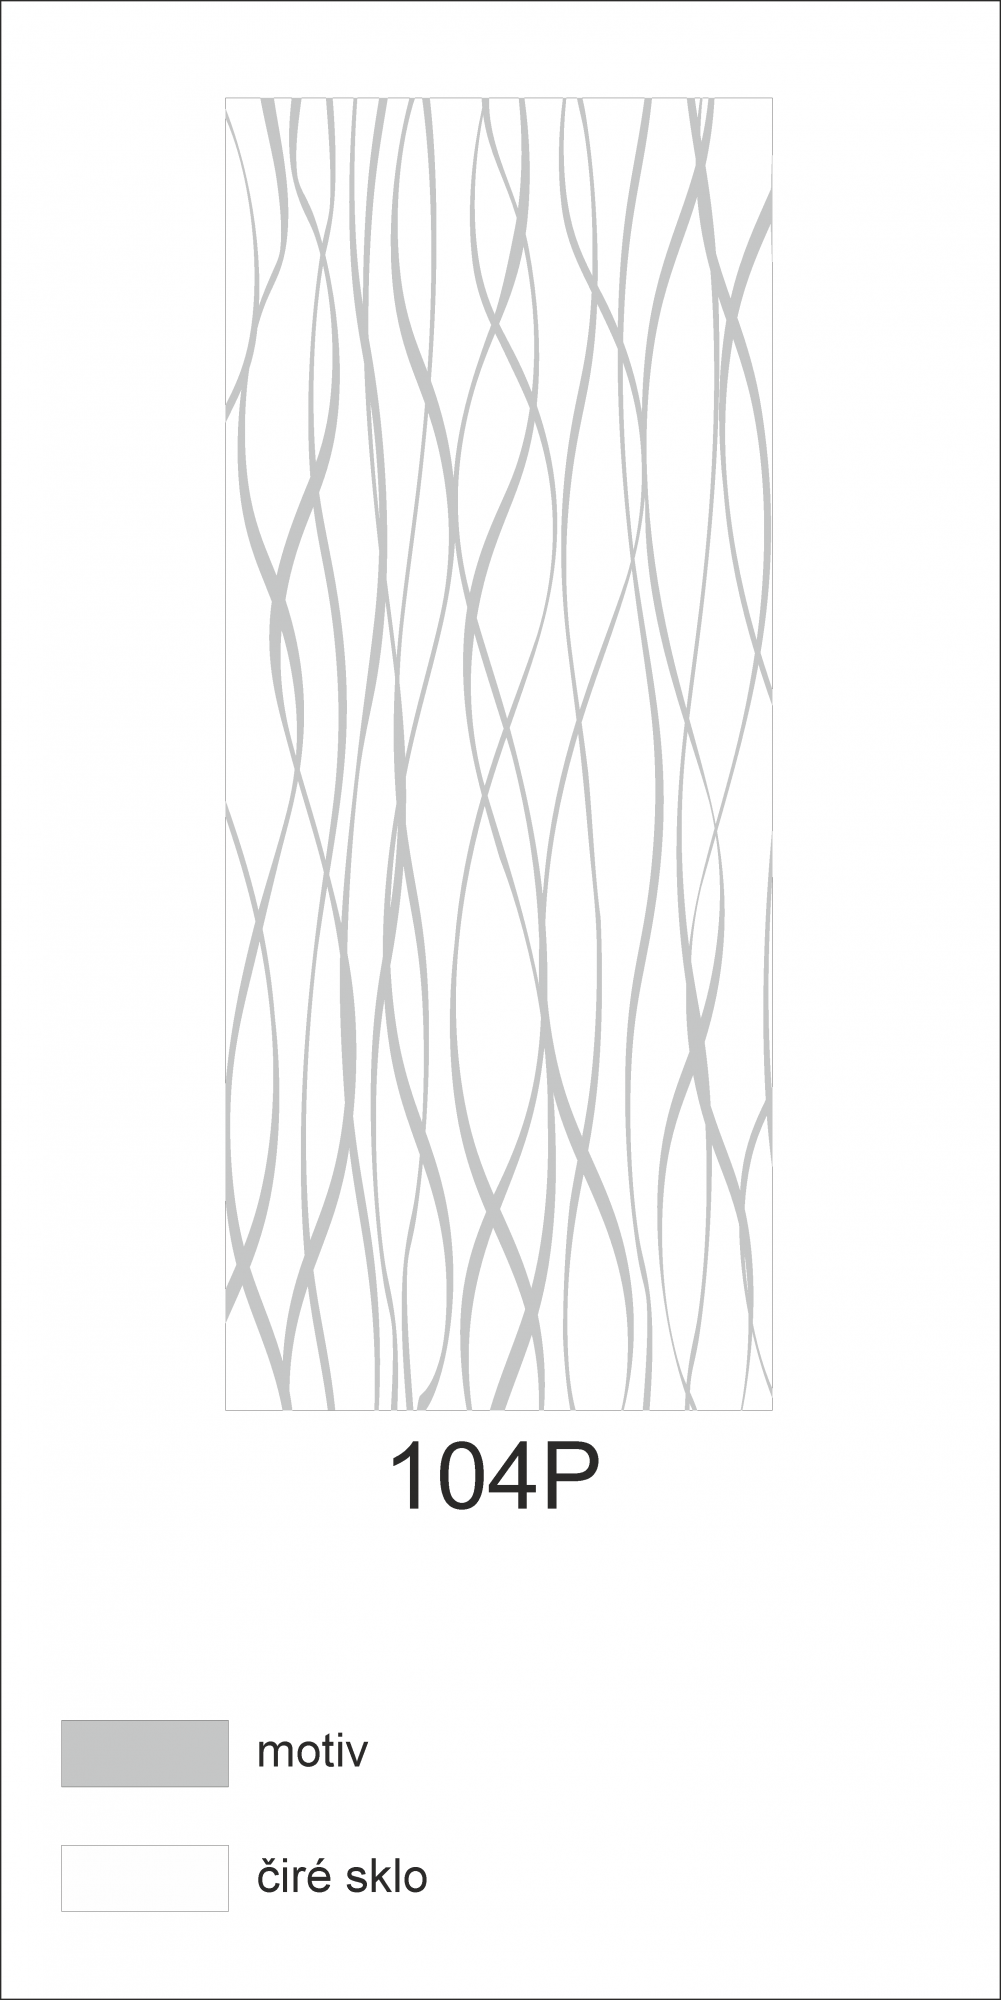 Možný motiv na skleněných dveřích nebo skleněných stěnách 104P - elegantní síť